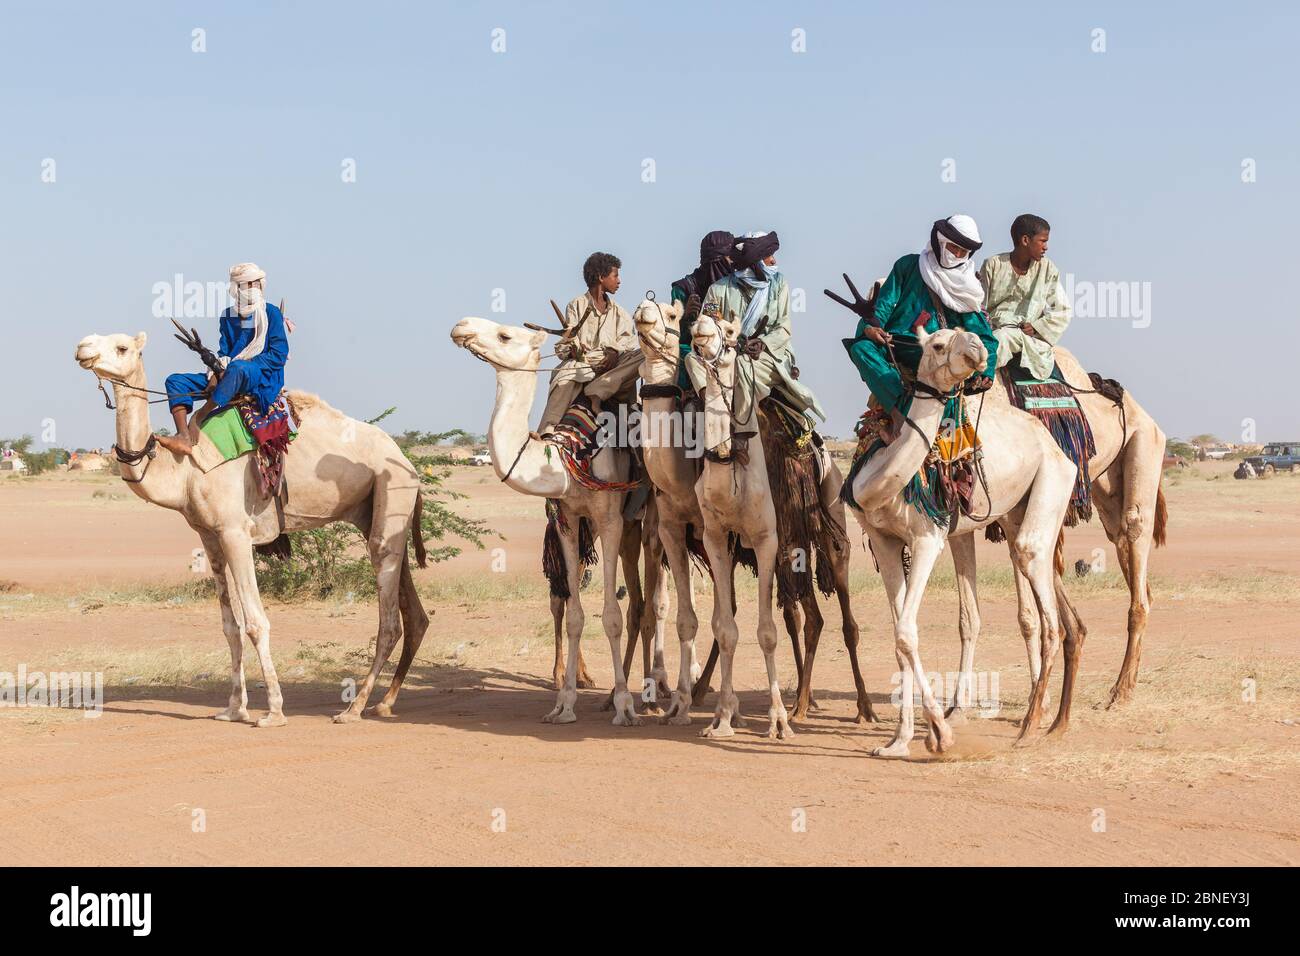 Ingall, Nige Cure sale festivalr: tuareg persone in abiti tradizionali seduti su cammelli nel deserto Foto Stock